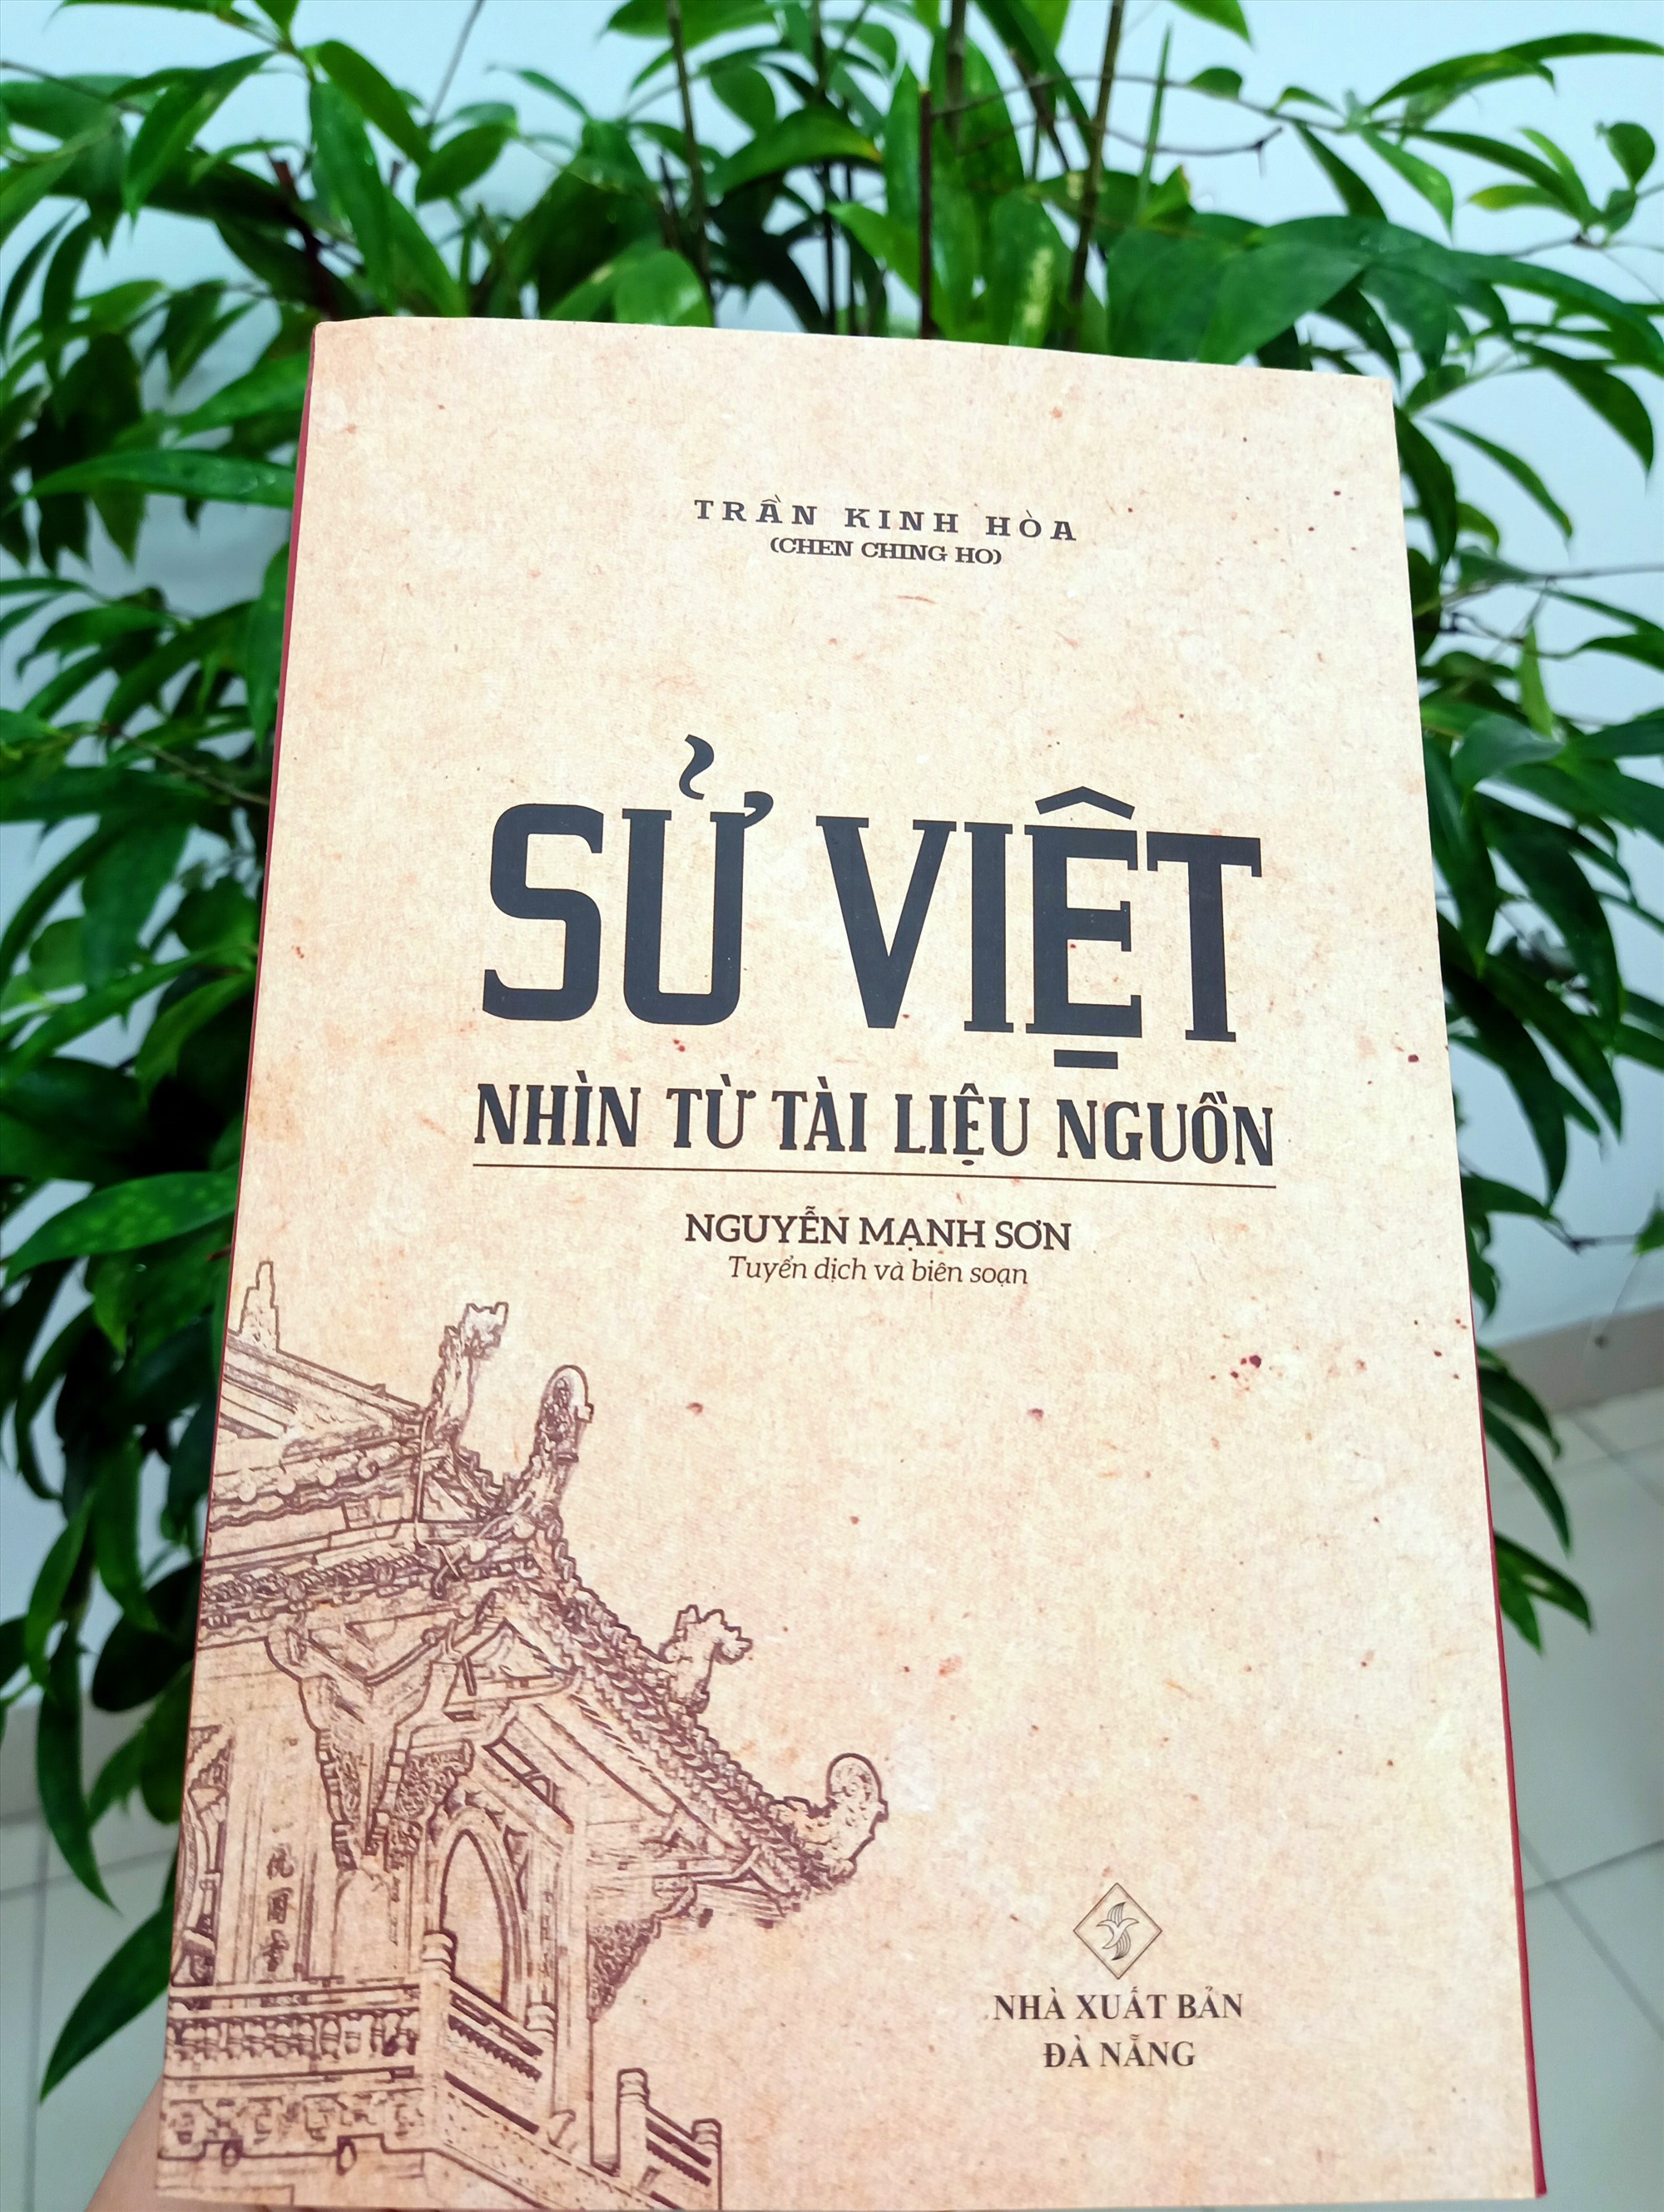 Bìa tập sách “Sử Việt nhìn từ tài liệu nguồn”.